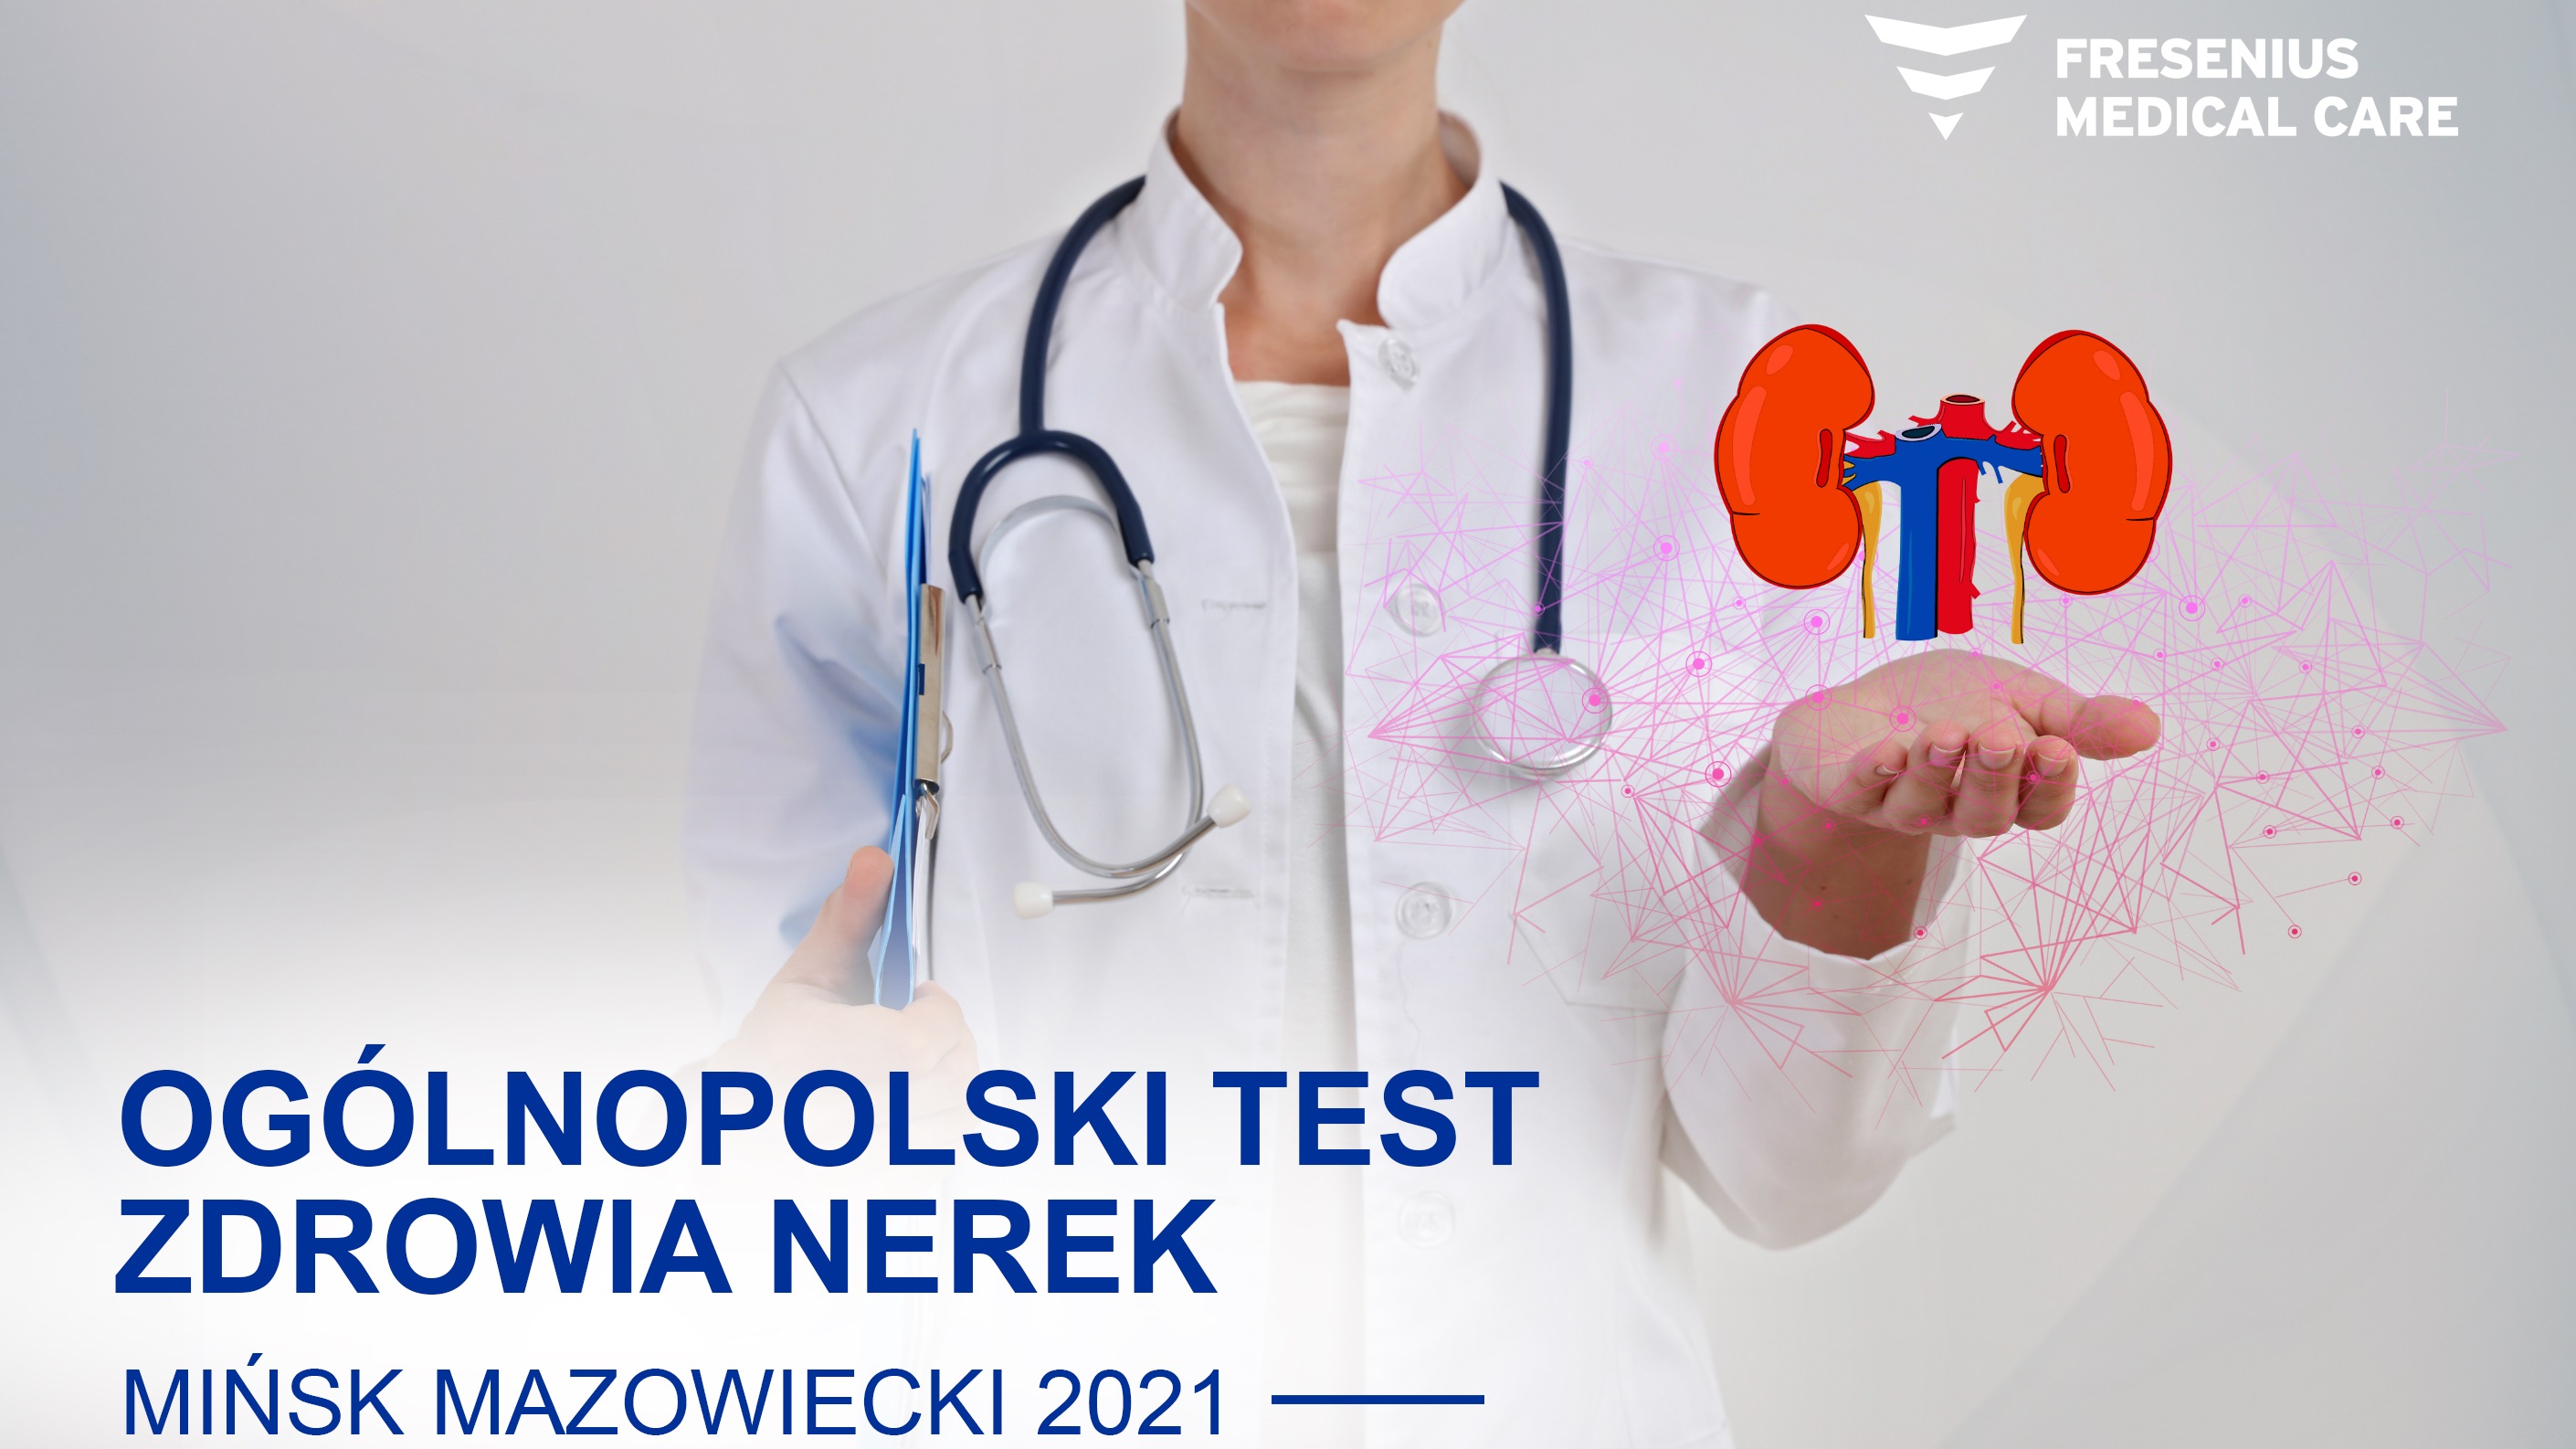 Oglnopolski Test Zdrowia Nerek / Zdrowie nerkowe